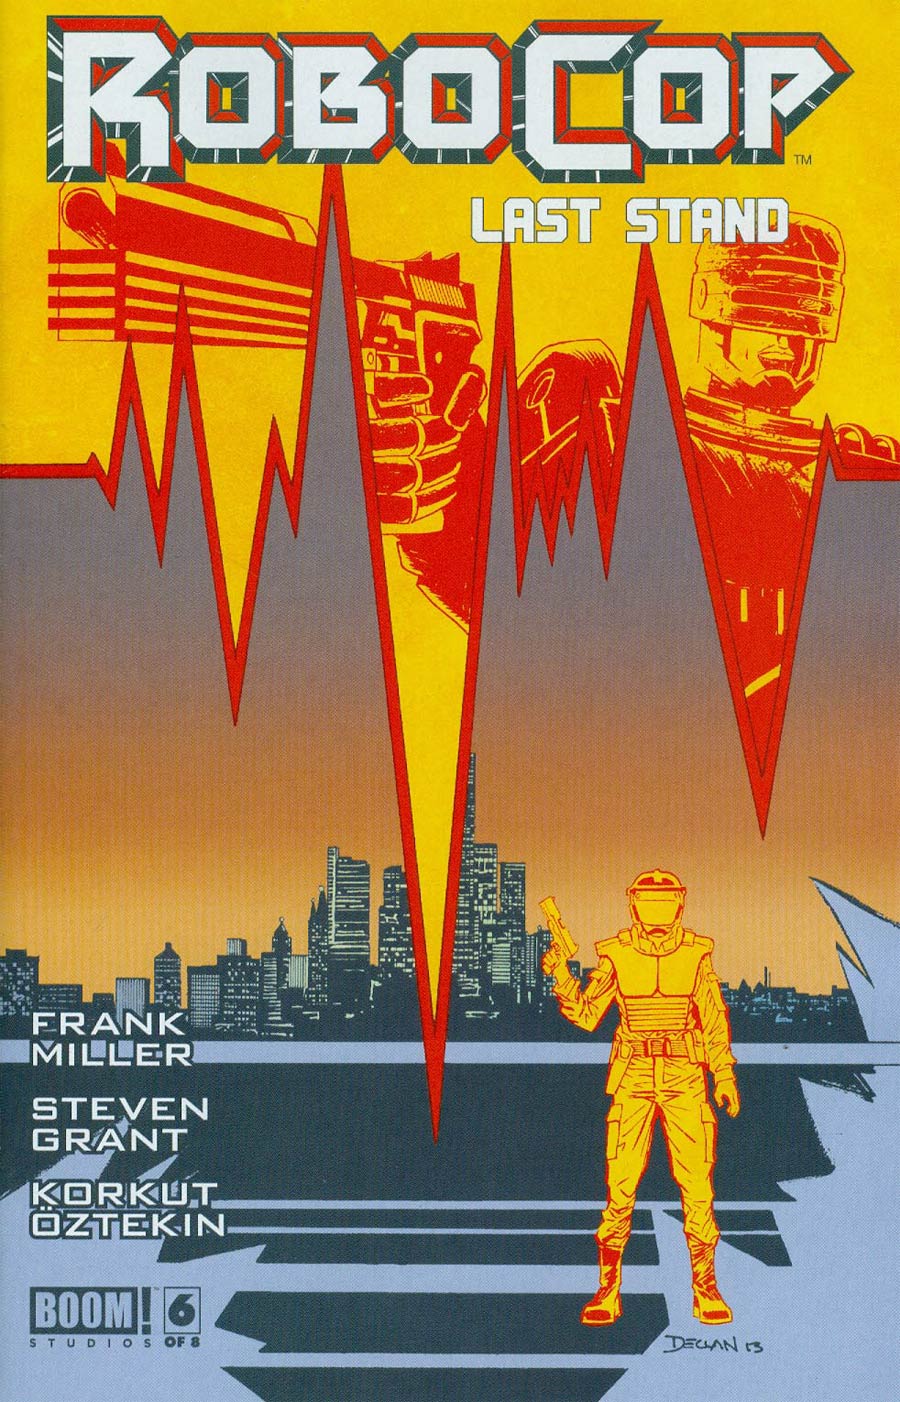 Robocop (Frank Miller) Last Stand #6